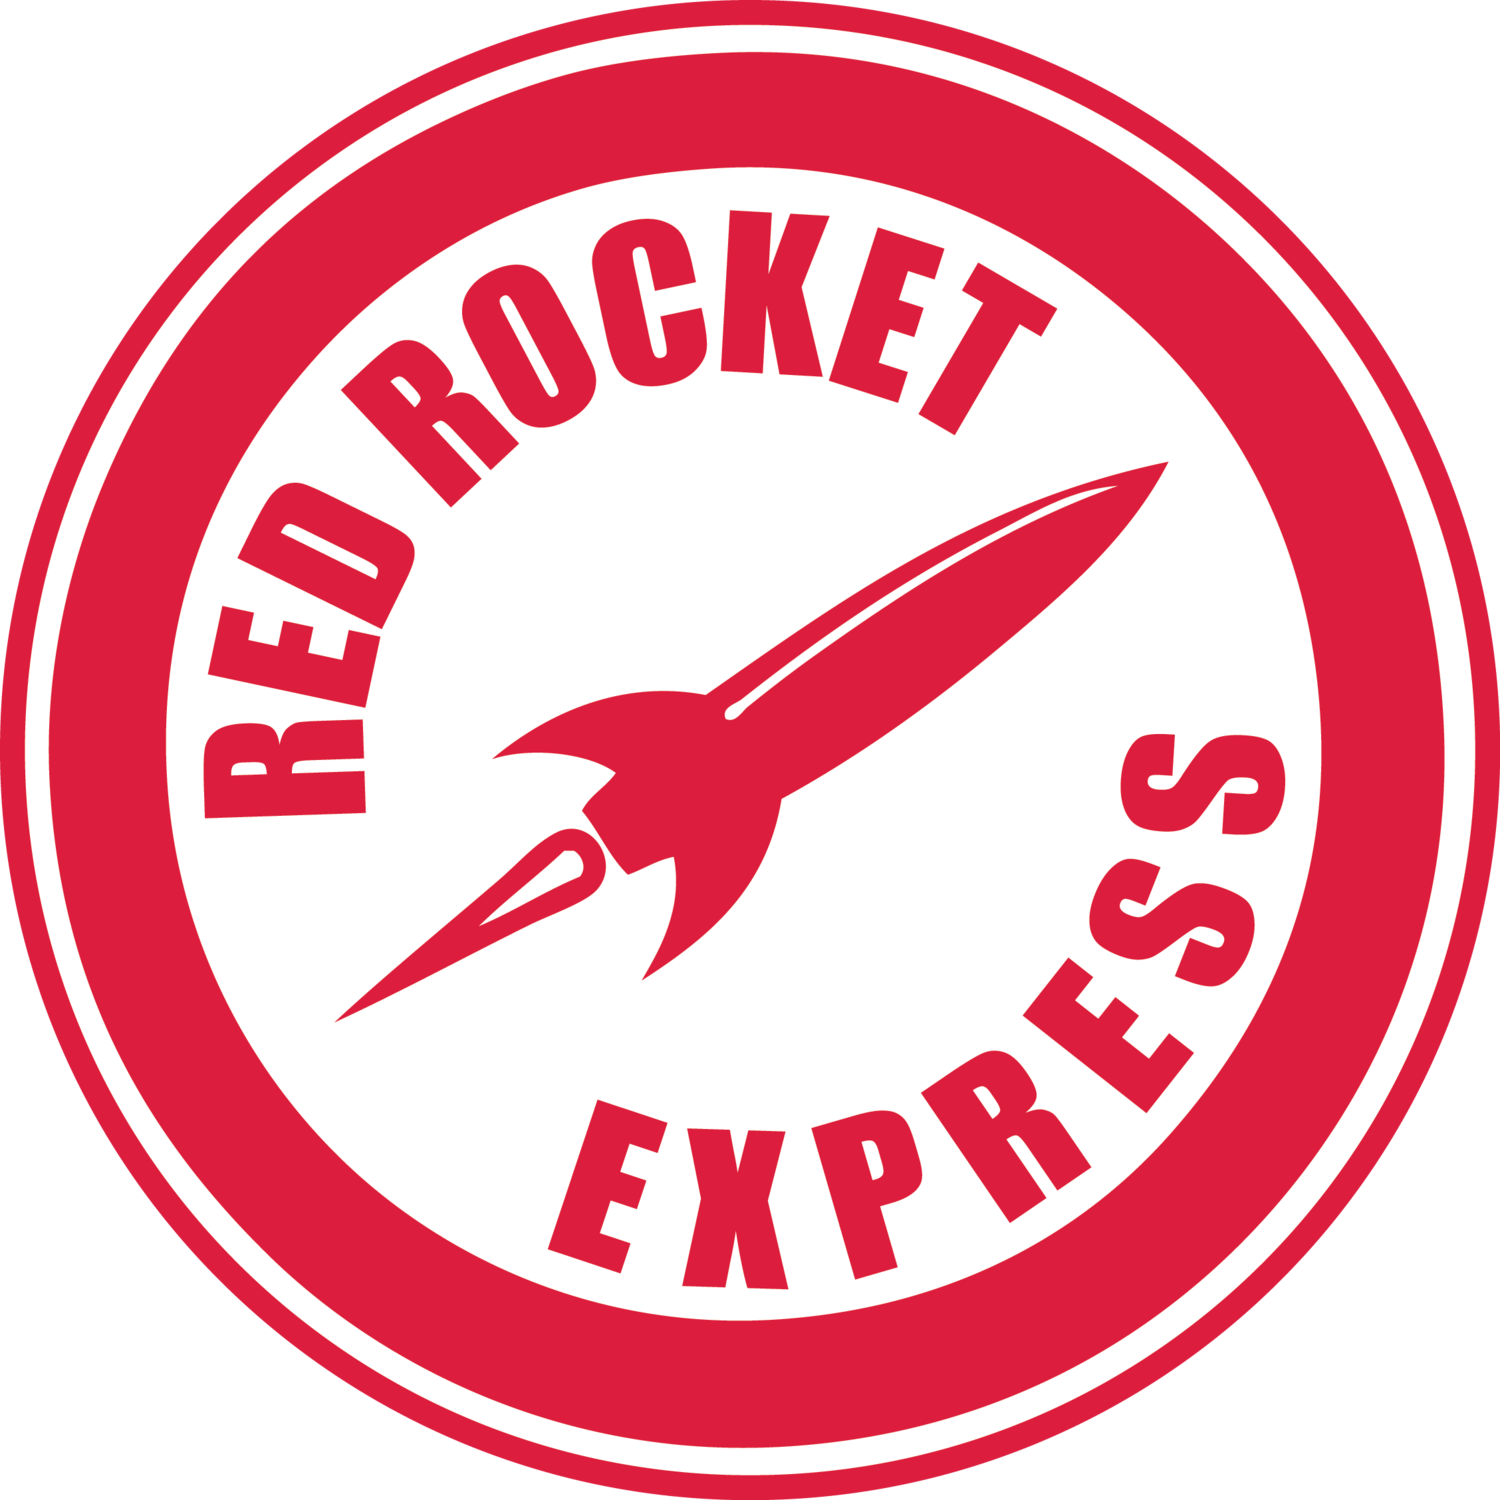 Red Rocket Logo - Red Rocket Express Car Wash